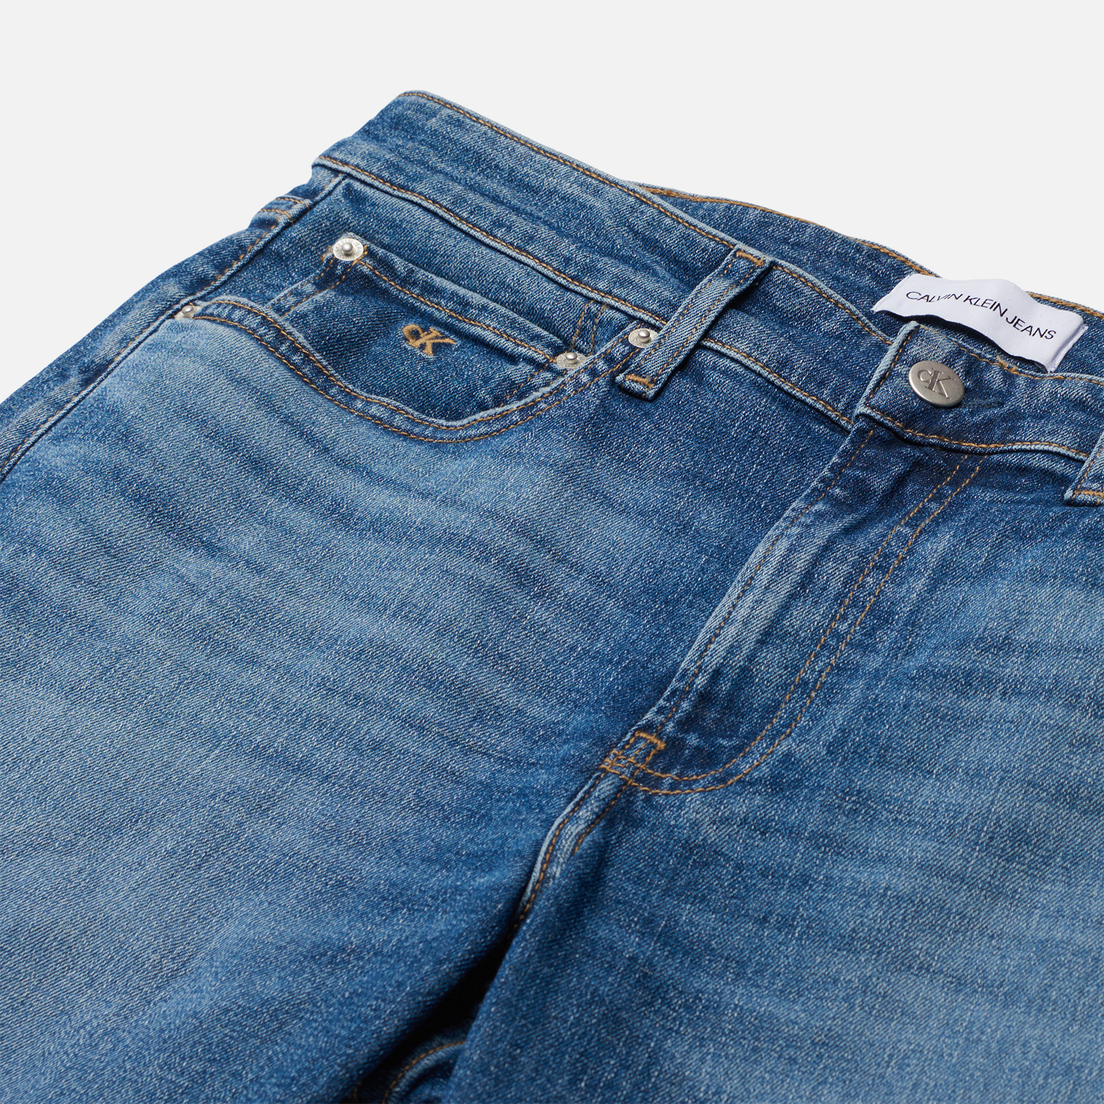 Calvin Klein Jeans Мужские шорты Regular Short